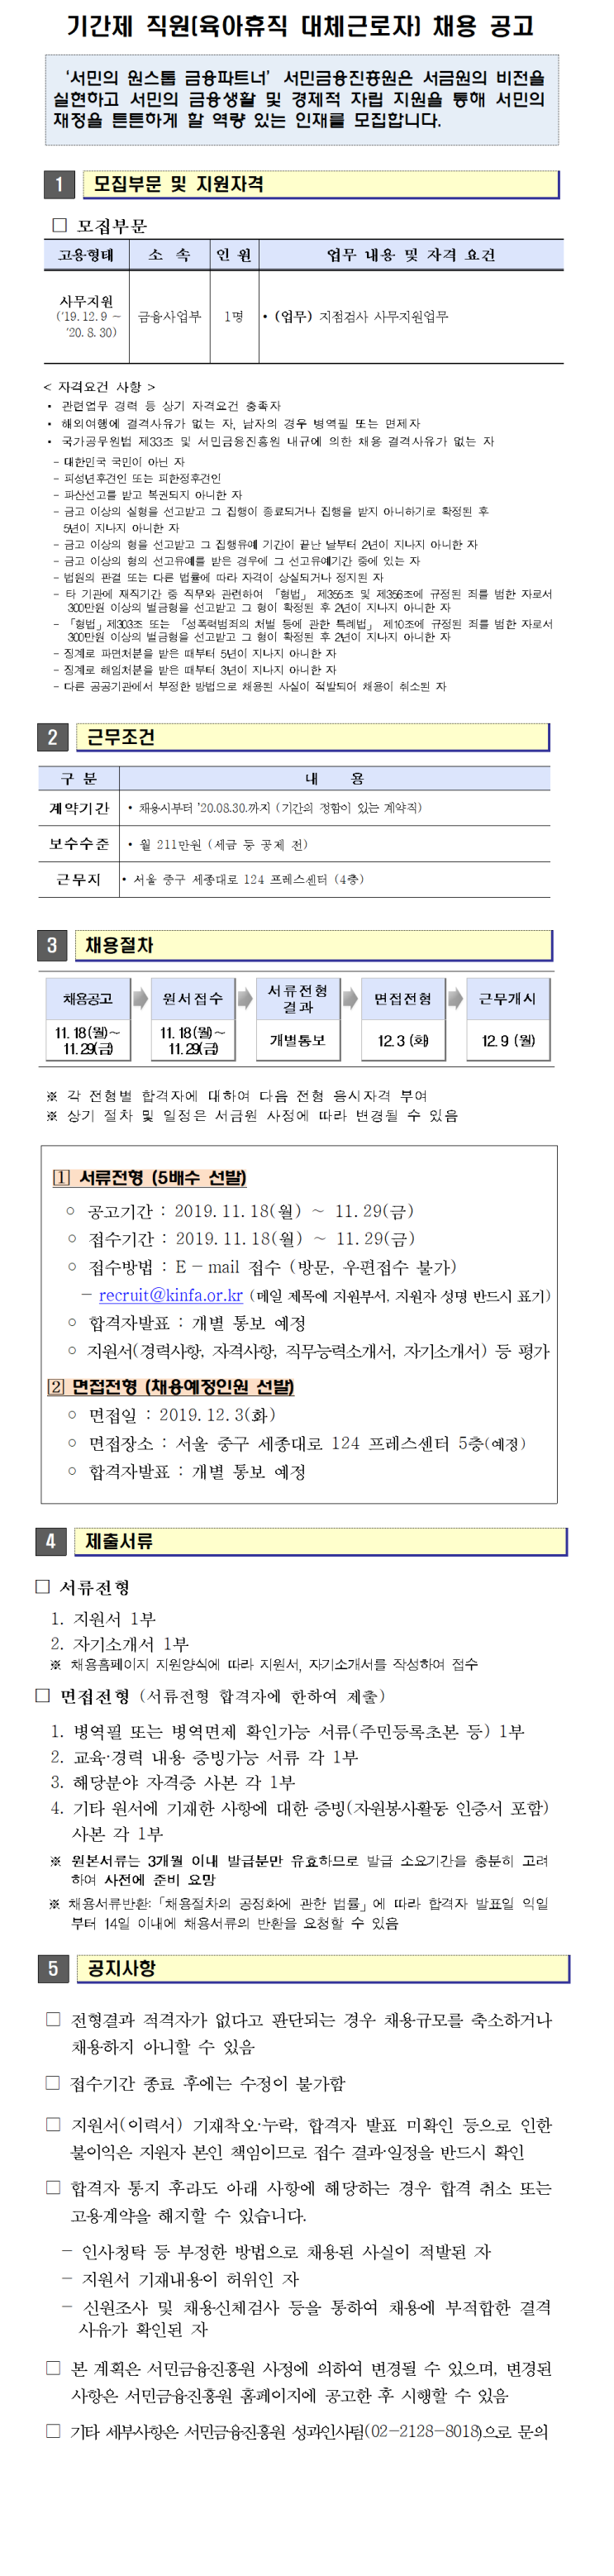 [채용][서민금융진흥원] 2019년 하반기 기간제 직원(육아휴직 대체근로자) 채용공고